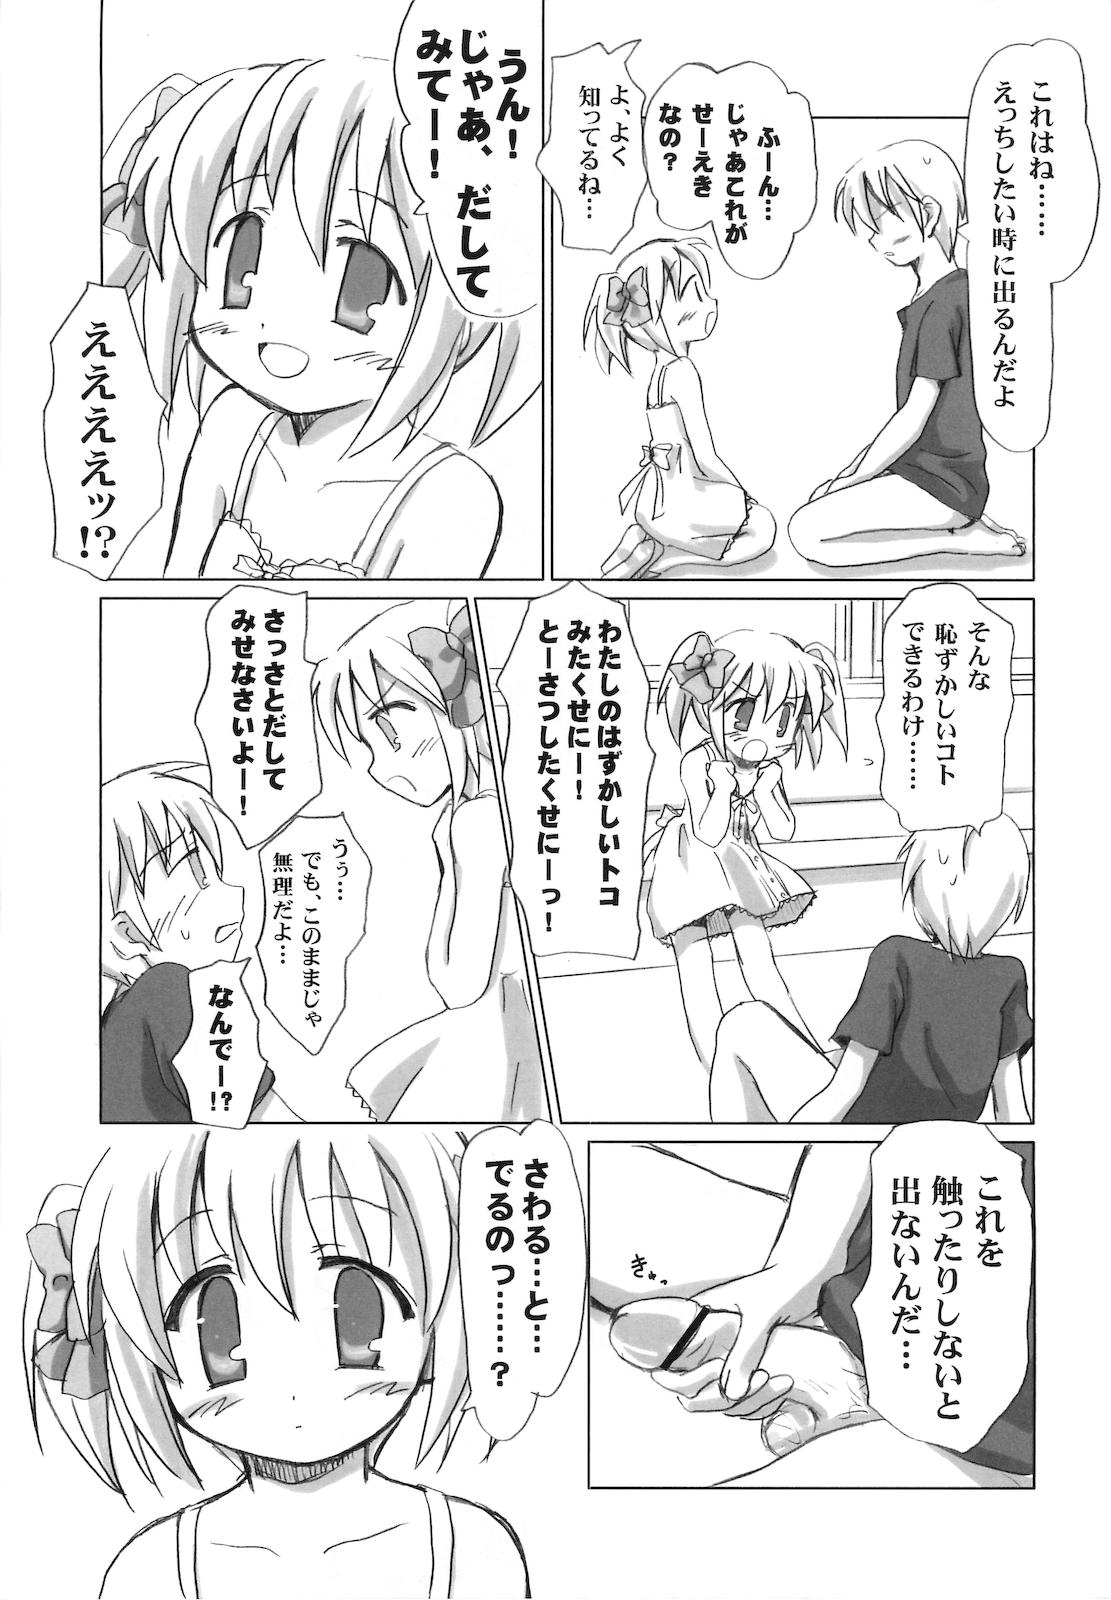 Humiliation Pov Mazarashi no Hon 4 "Lolikko no Yatsu" Doggy - Page 12